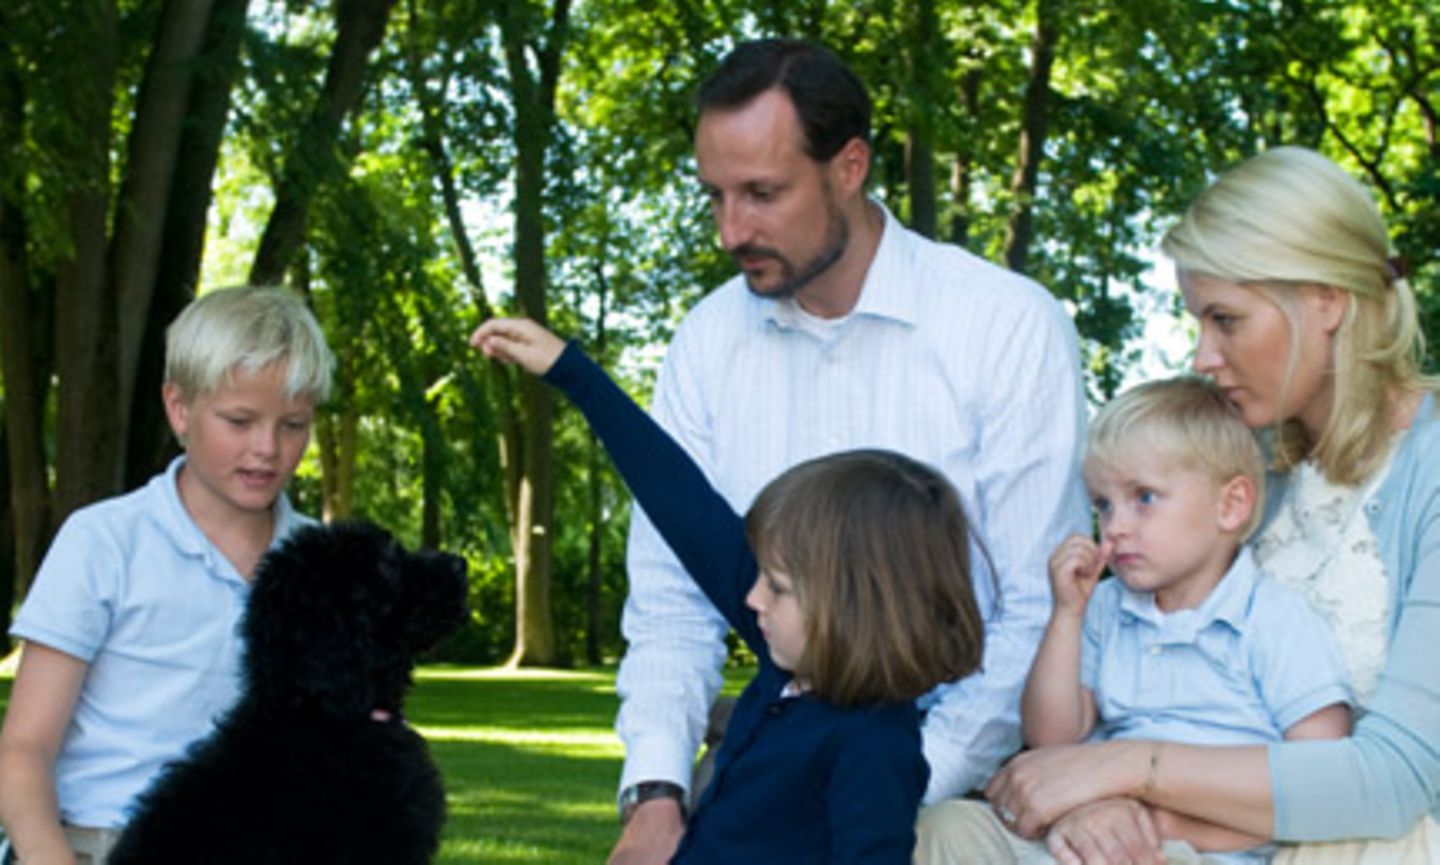 Im Jahr 2009 entstand dieses Bild der norwegischen Kronprinzenfamilie mit ihrem neuen Hund "Milly Kakao", einem Labradoodle, der von den Kindern sofort heiß geliebt wurde und seitdem immer mal wieder auf Bildern der Königsfamilie in ihrer Freizeit zu sehen ist.